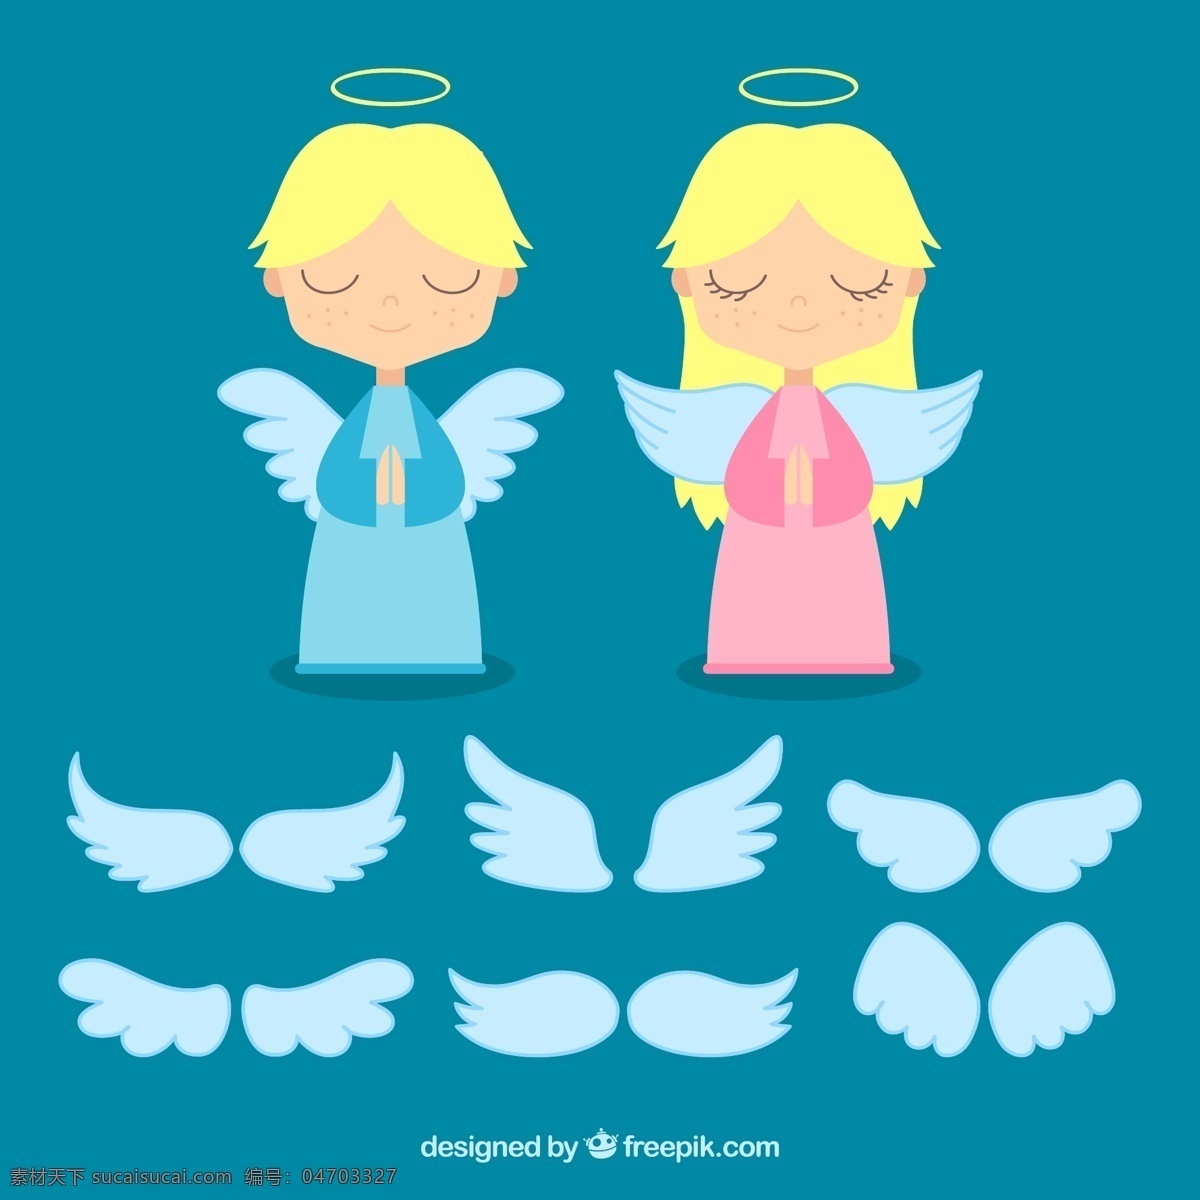 可爱天使 可爱女孩 天使翅膀 插画 天使 小天使 天使的翅膀 情人天使 浪漫小天使 丘比特 爱神 圣诞节 圣诞天使 平面素材